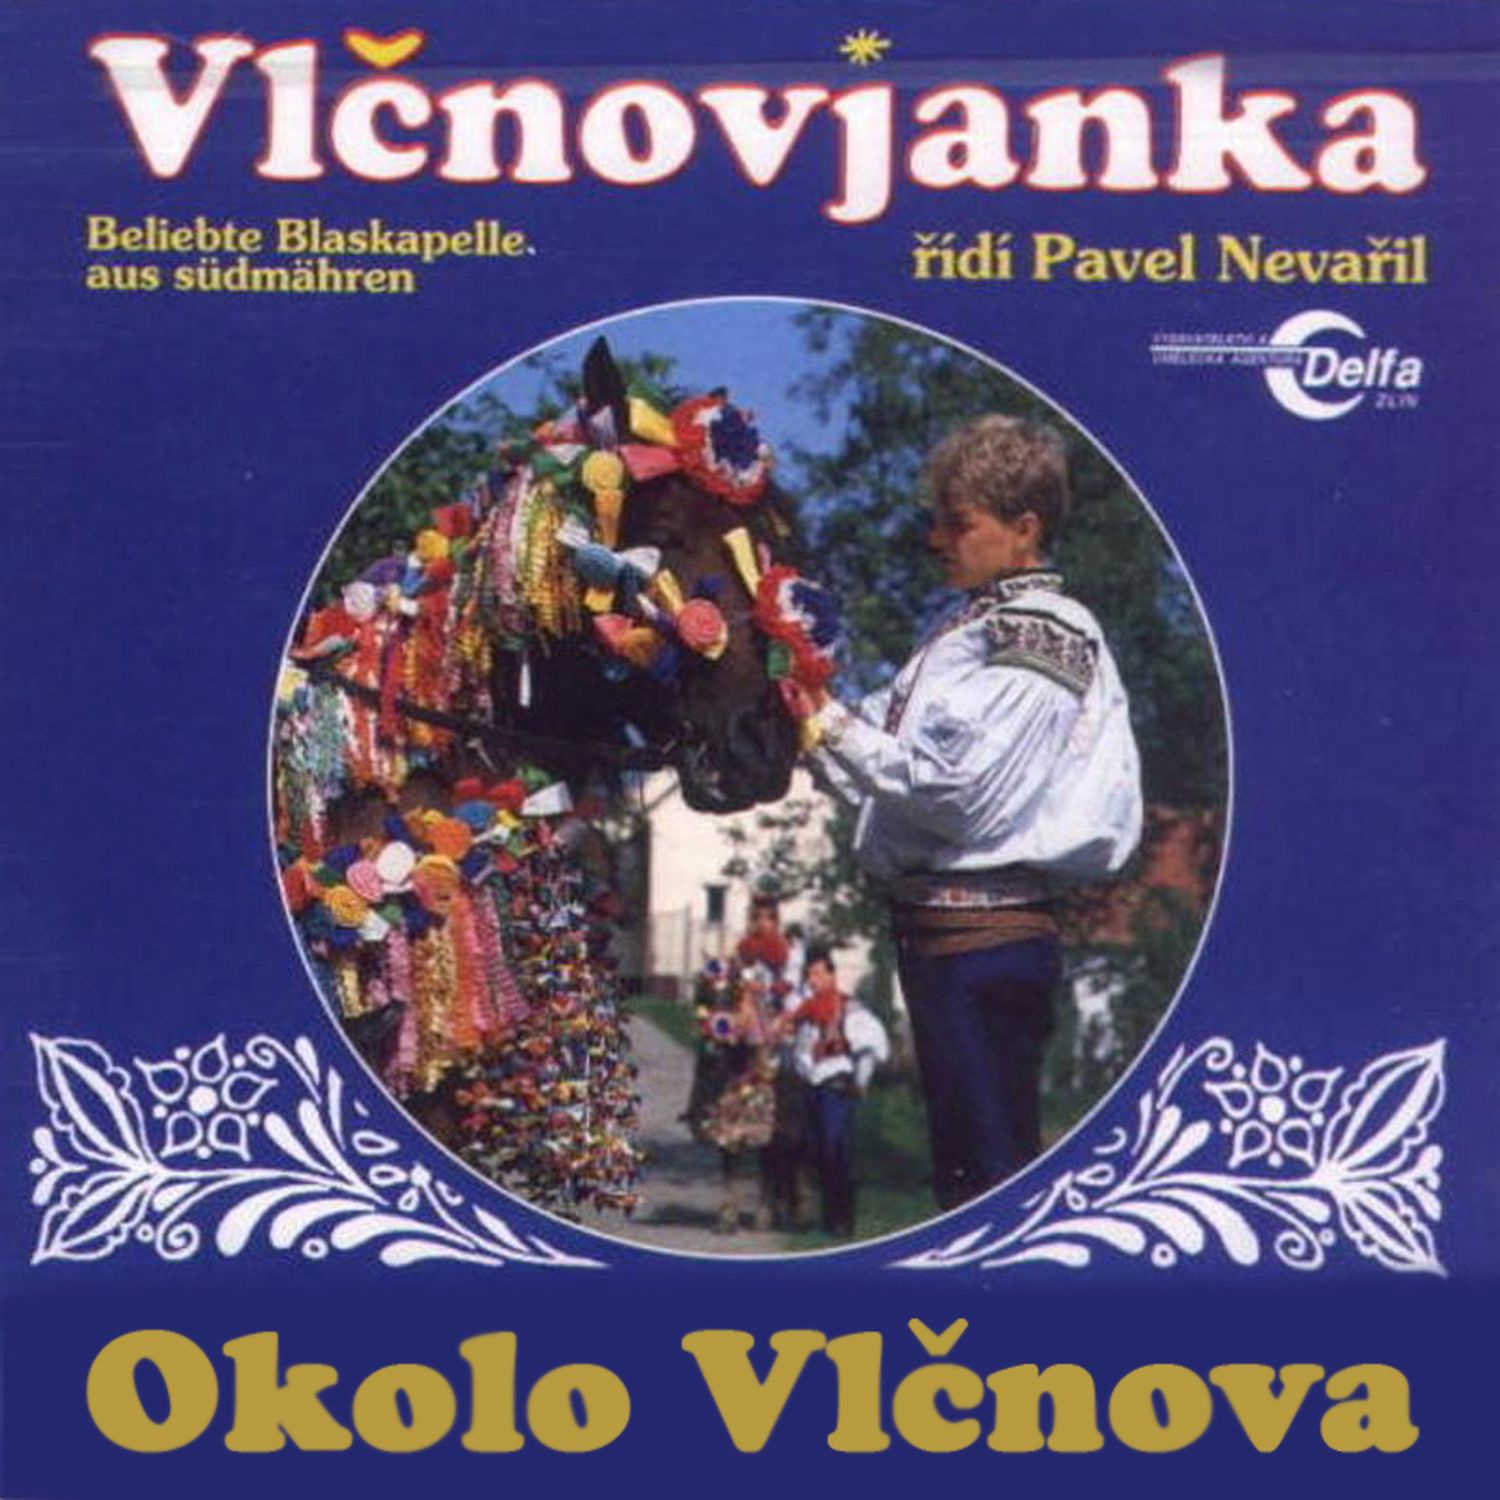 CD Shop - VLCNOVJANKA OKOLO VLCNOVA